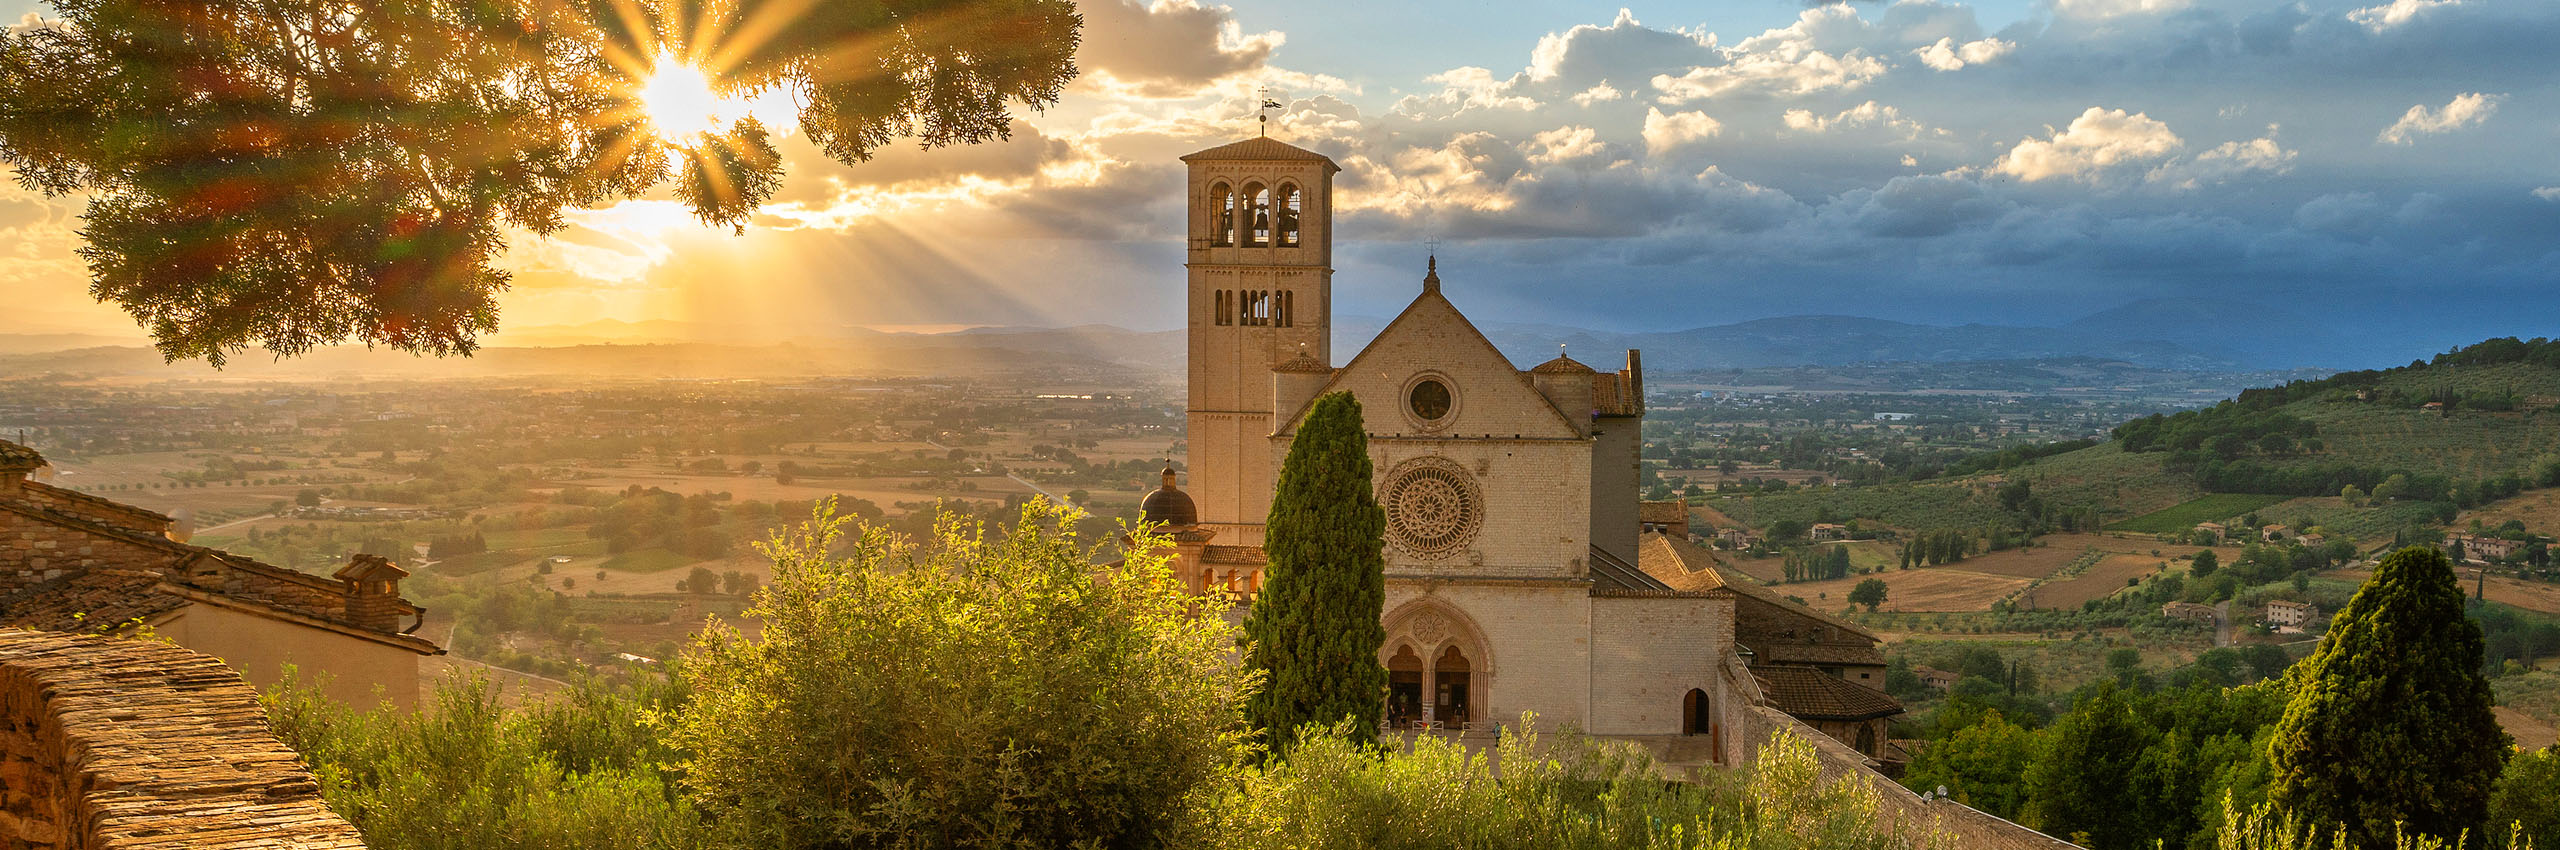 41177772 | Italy/Umbria, Perugia district, Assisi | © Hans-Georg Eiben/HUBER IMAGES